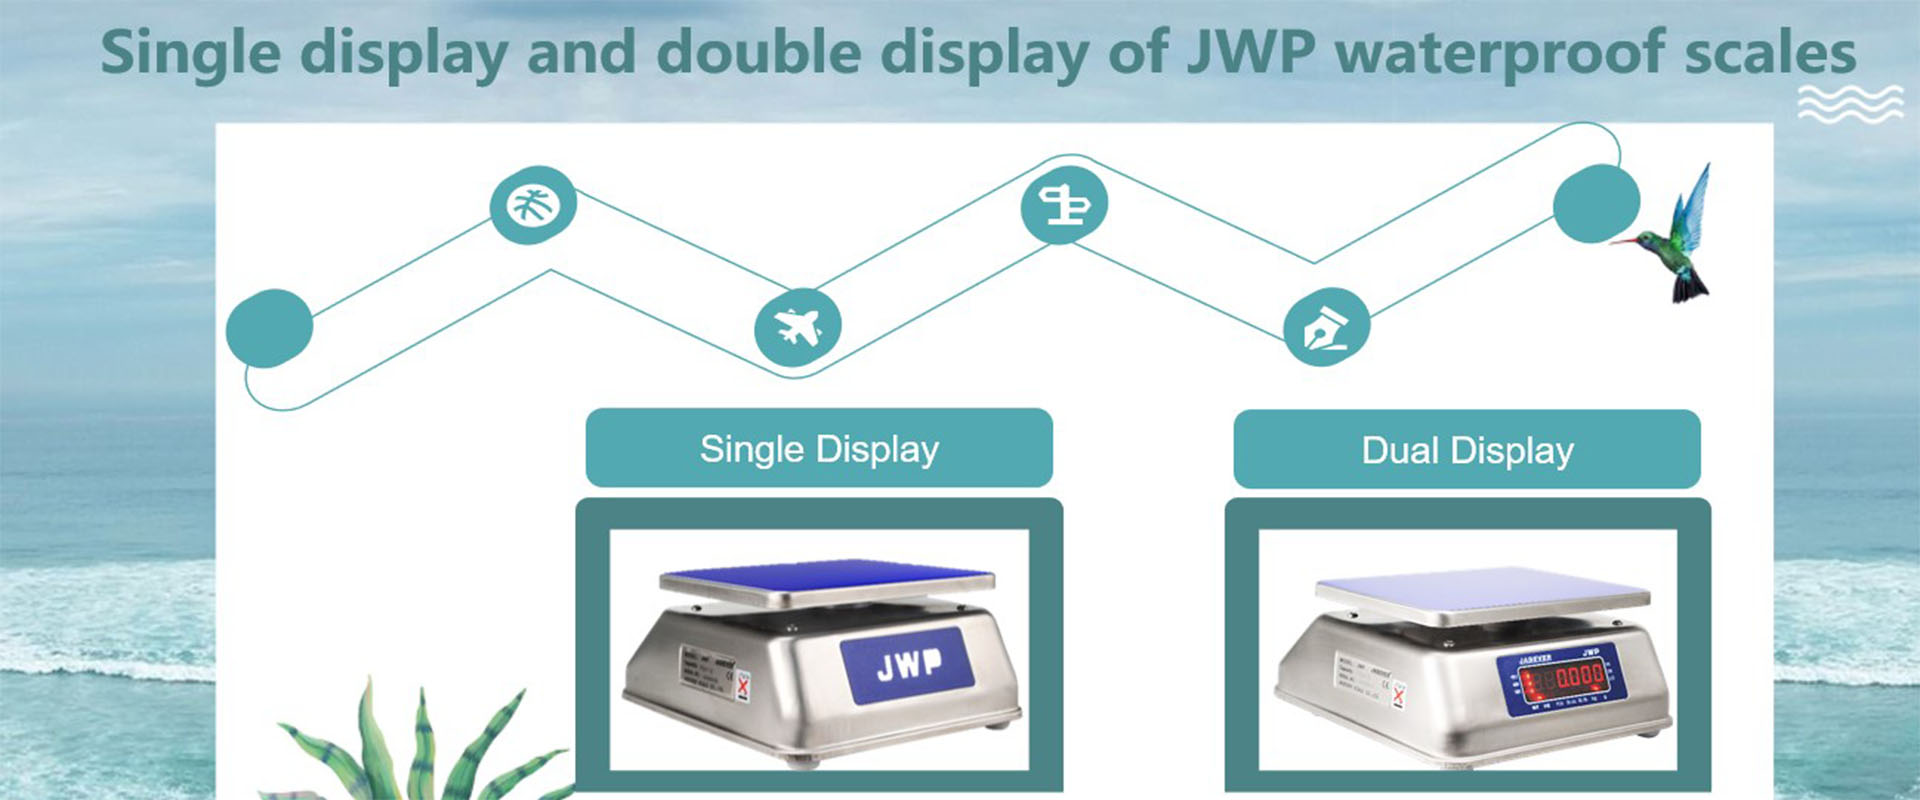 Display singolo e doppio display di bilance impermeabili JWP
